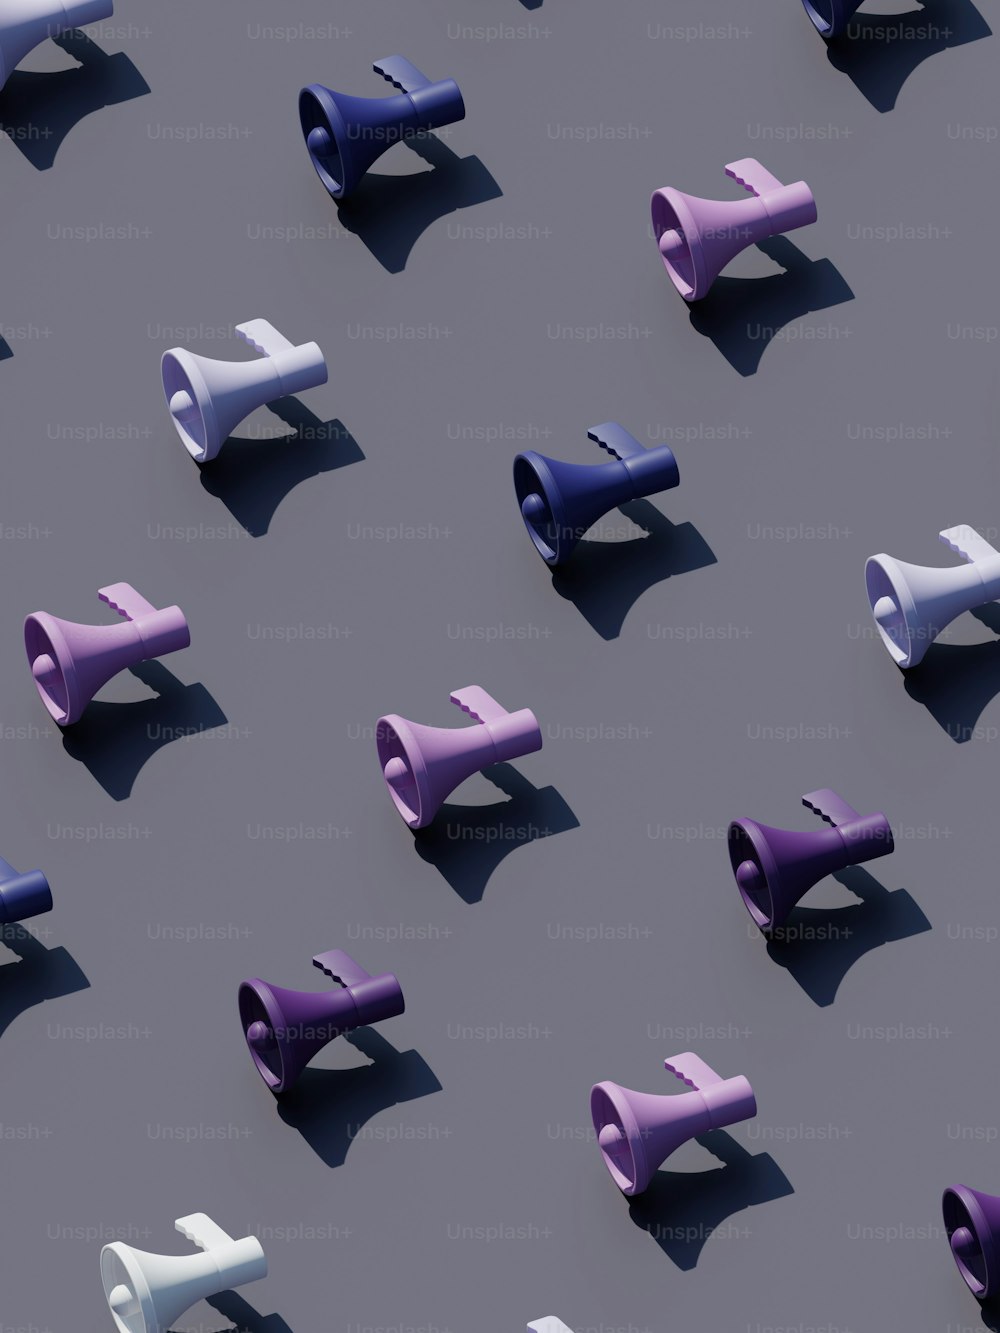 Un grupo de objetos púrpuras y blancos sobre una superficie gris